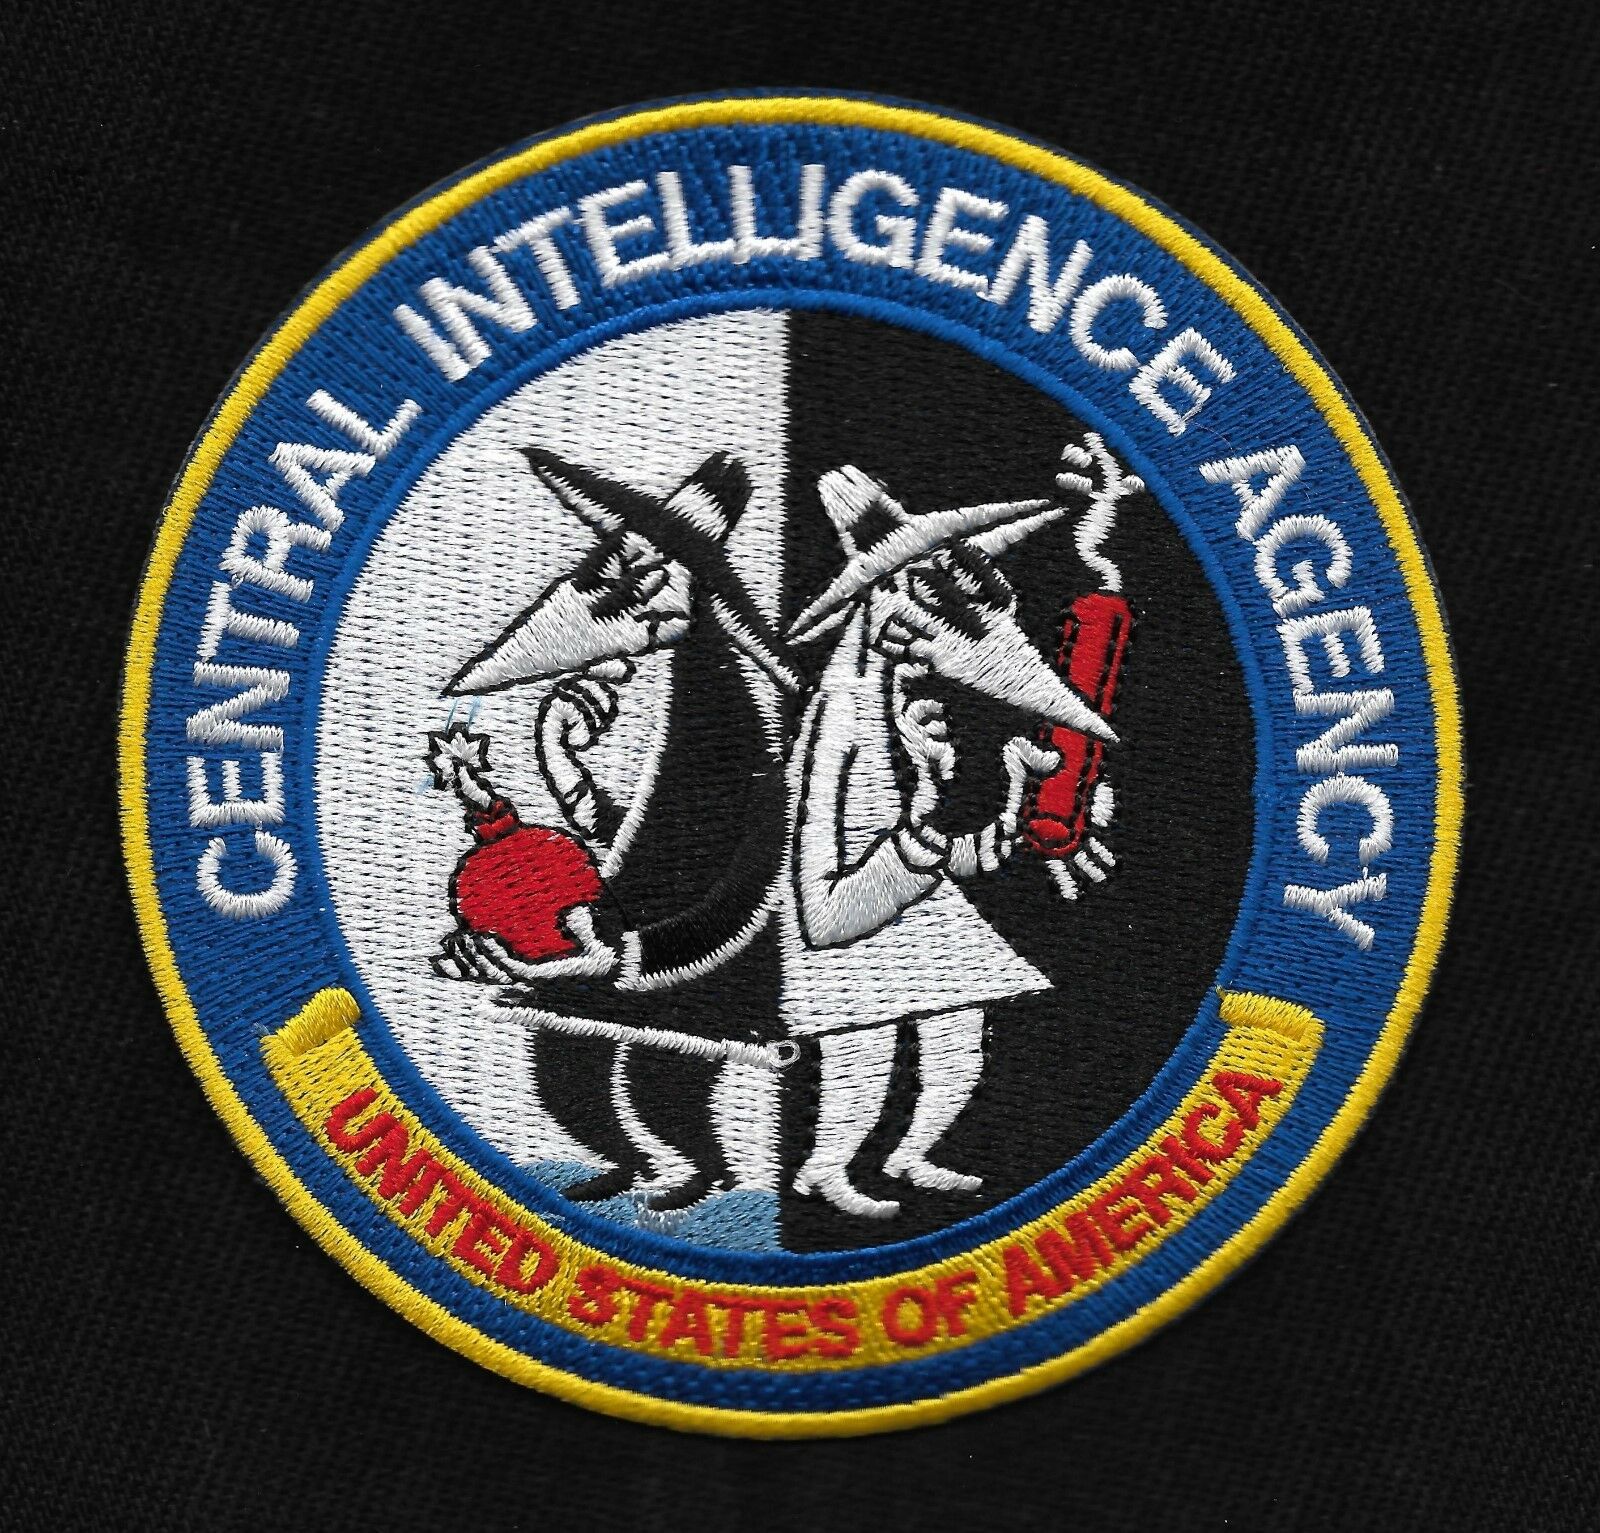 Central Intelligence Agency Cia United States Of America Spy Vs Spy Patch